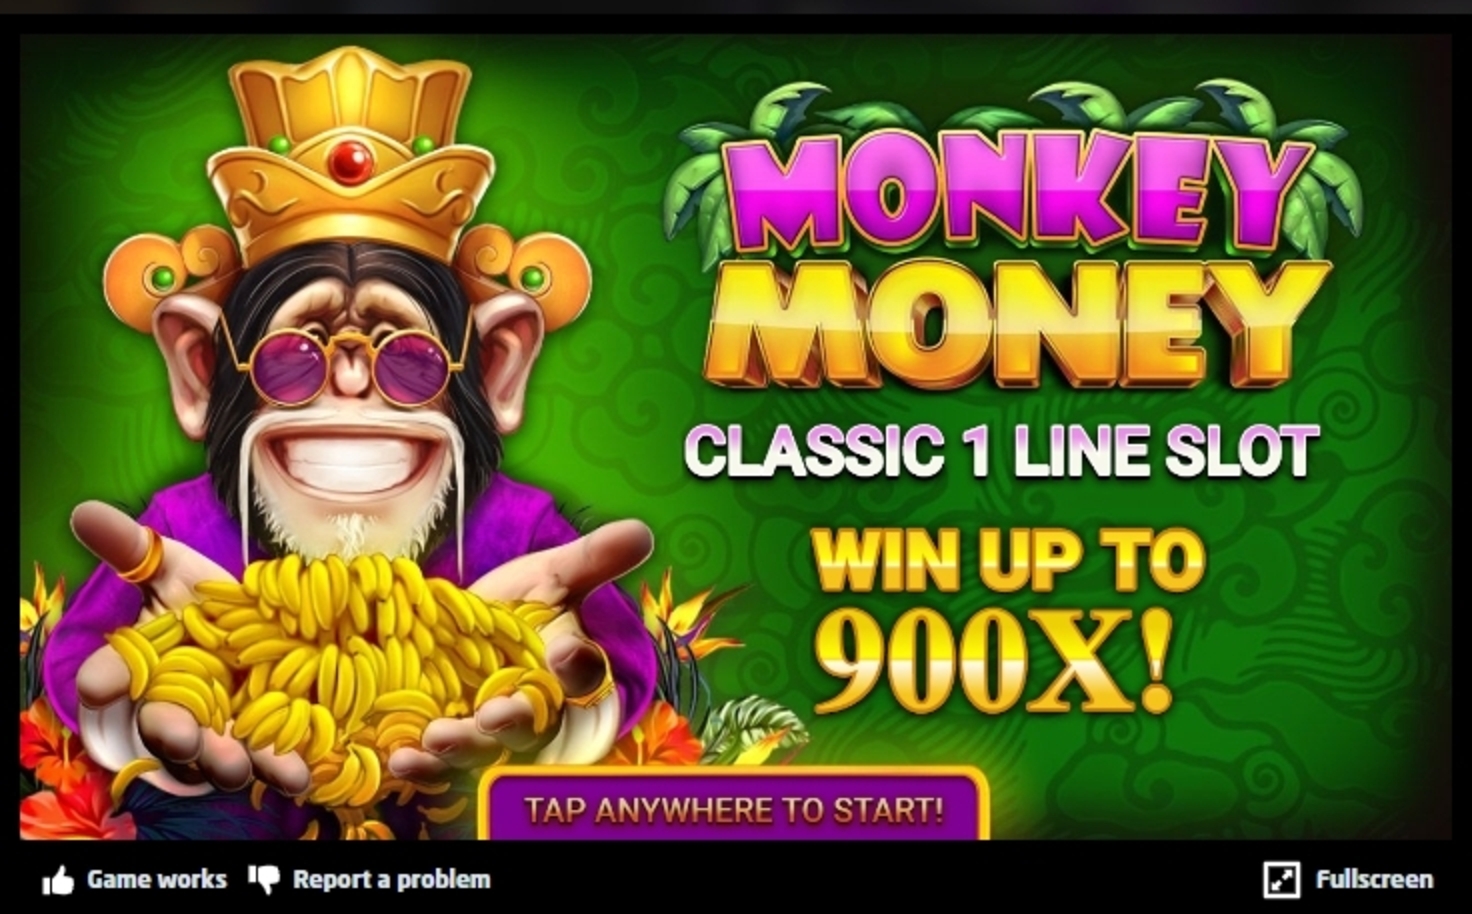 Monkey Casino